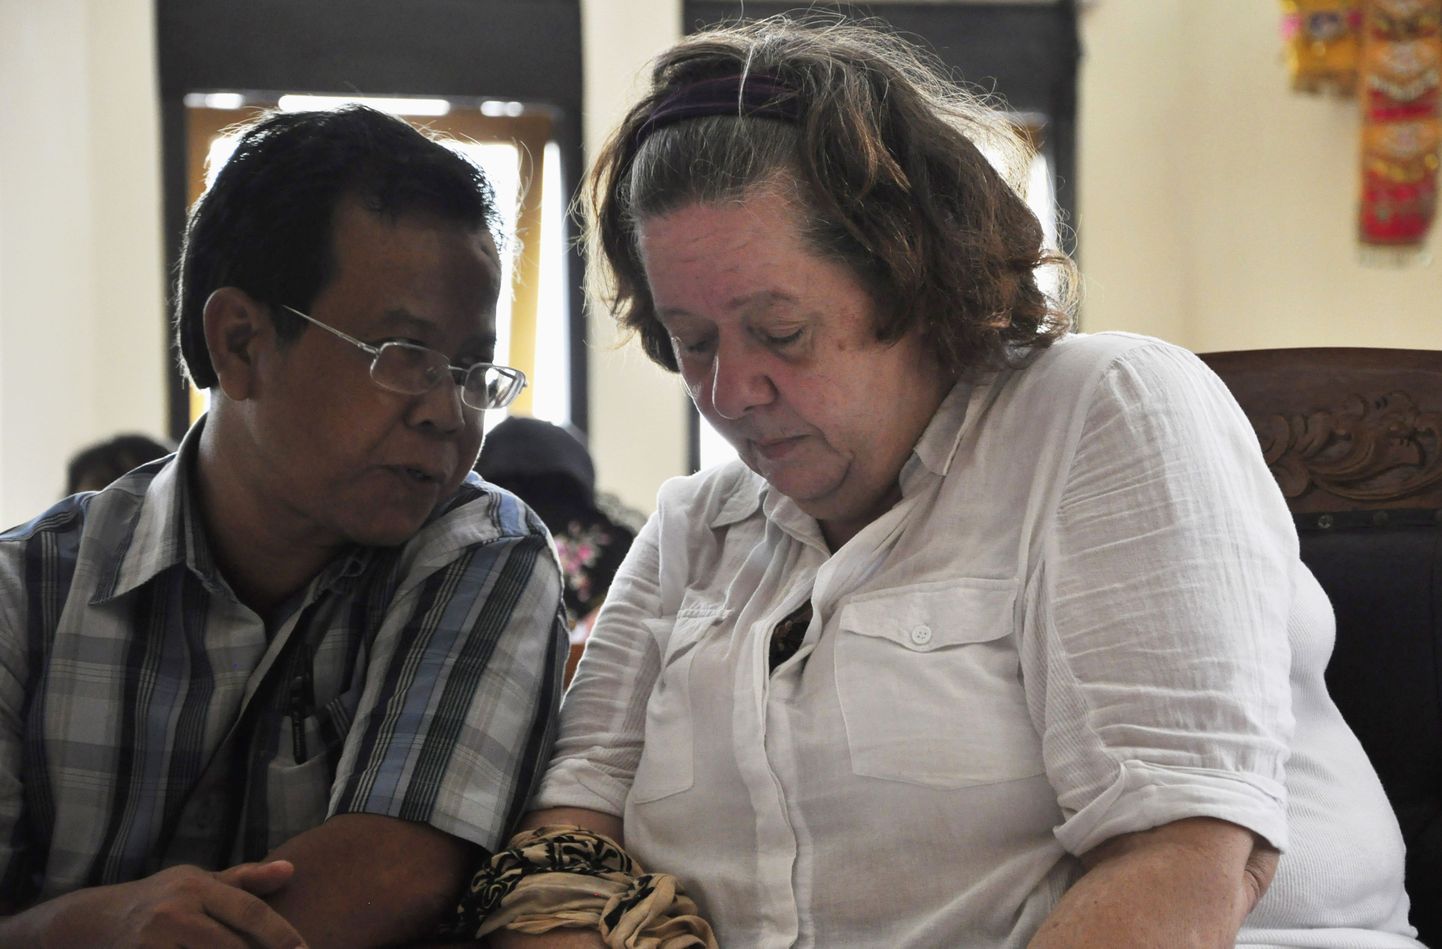 Lindsay Sandiford kuulab oma tõlki Bali provintsis Denpasaris asuvas kohtus.